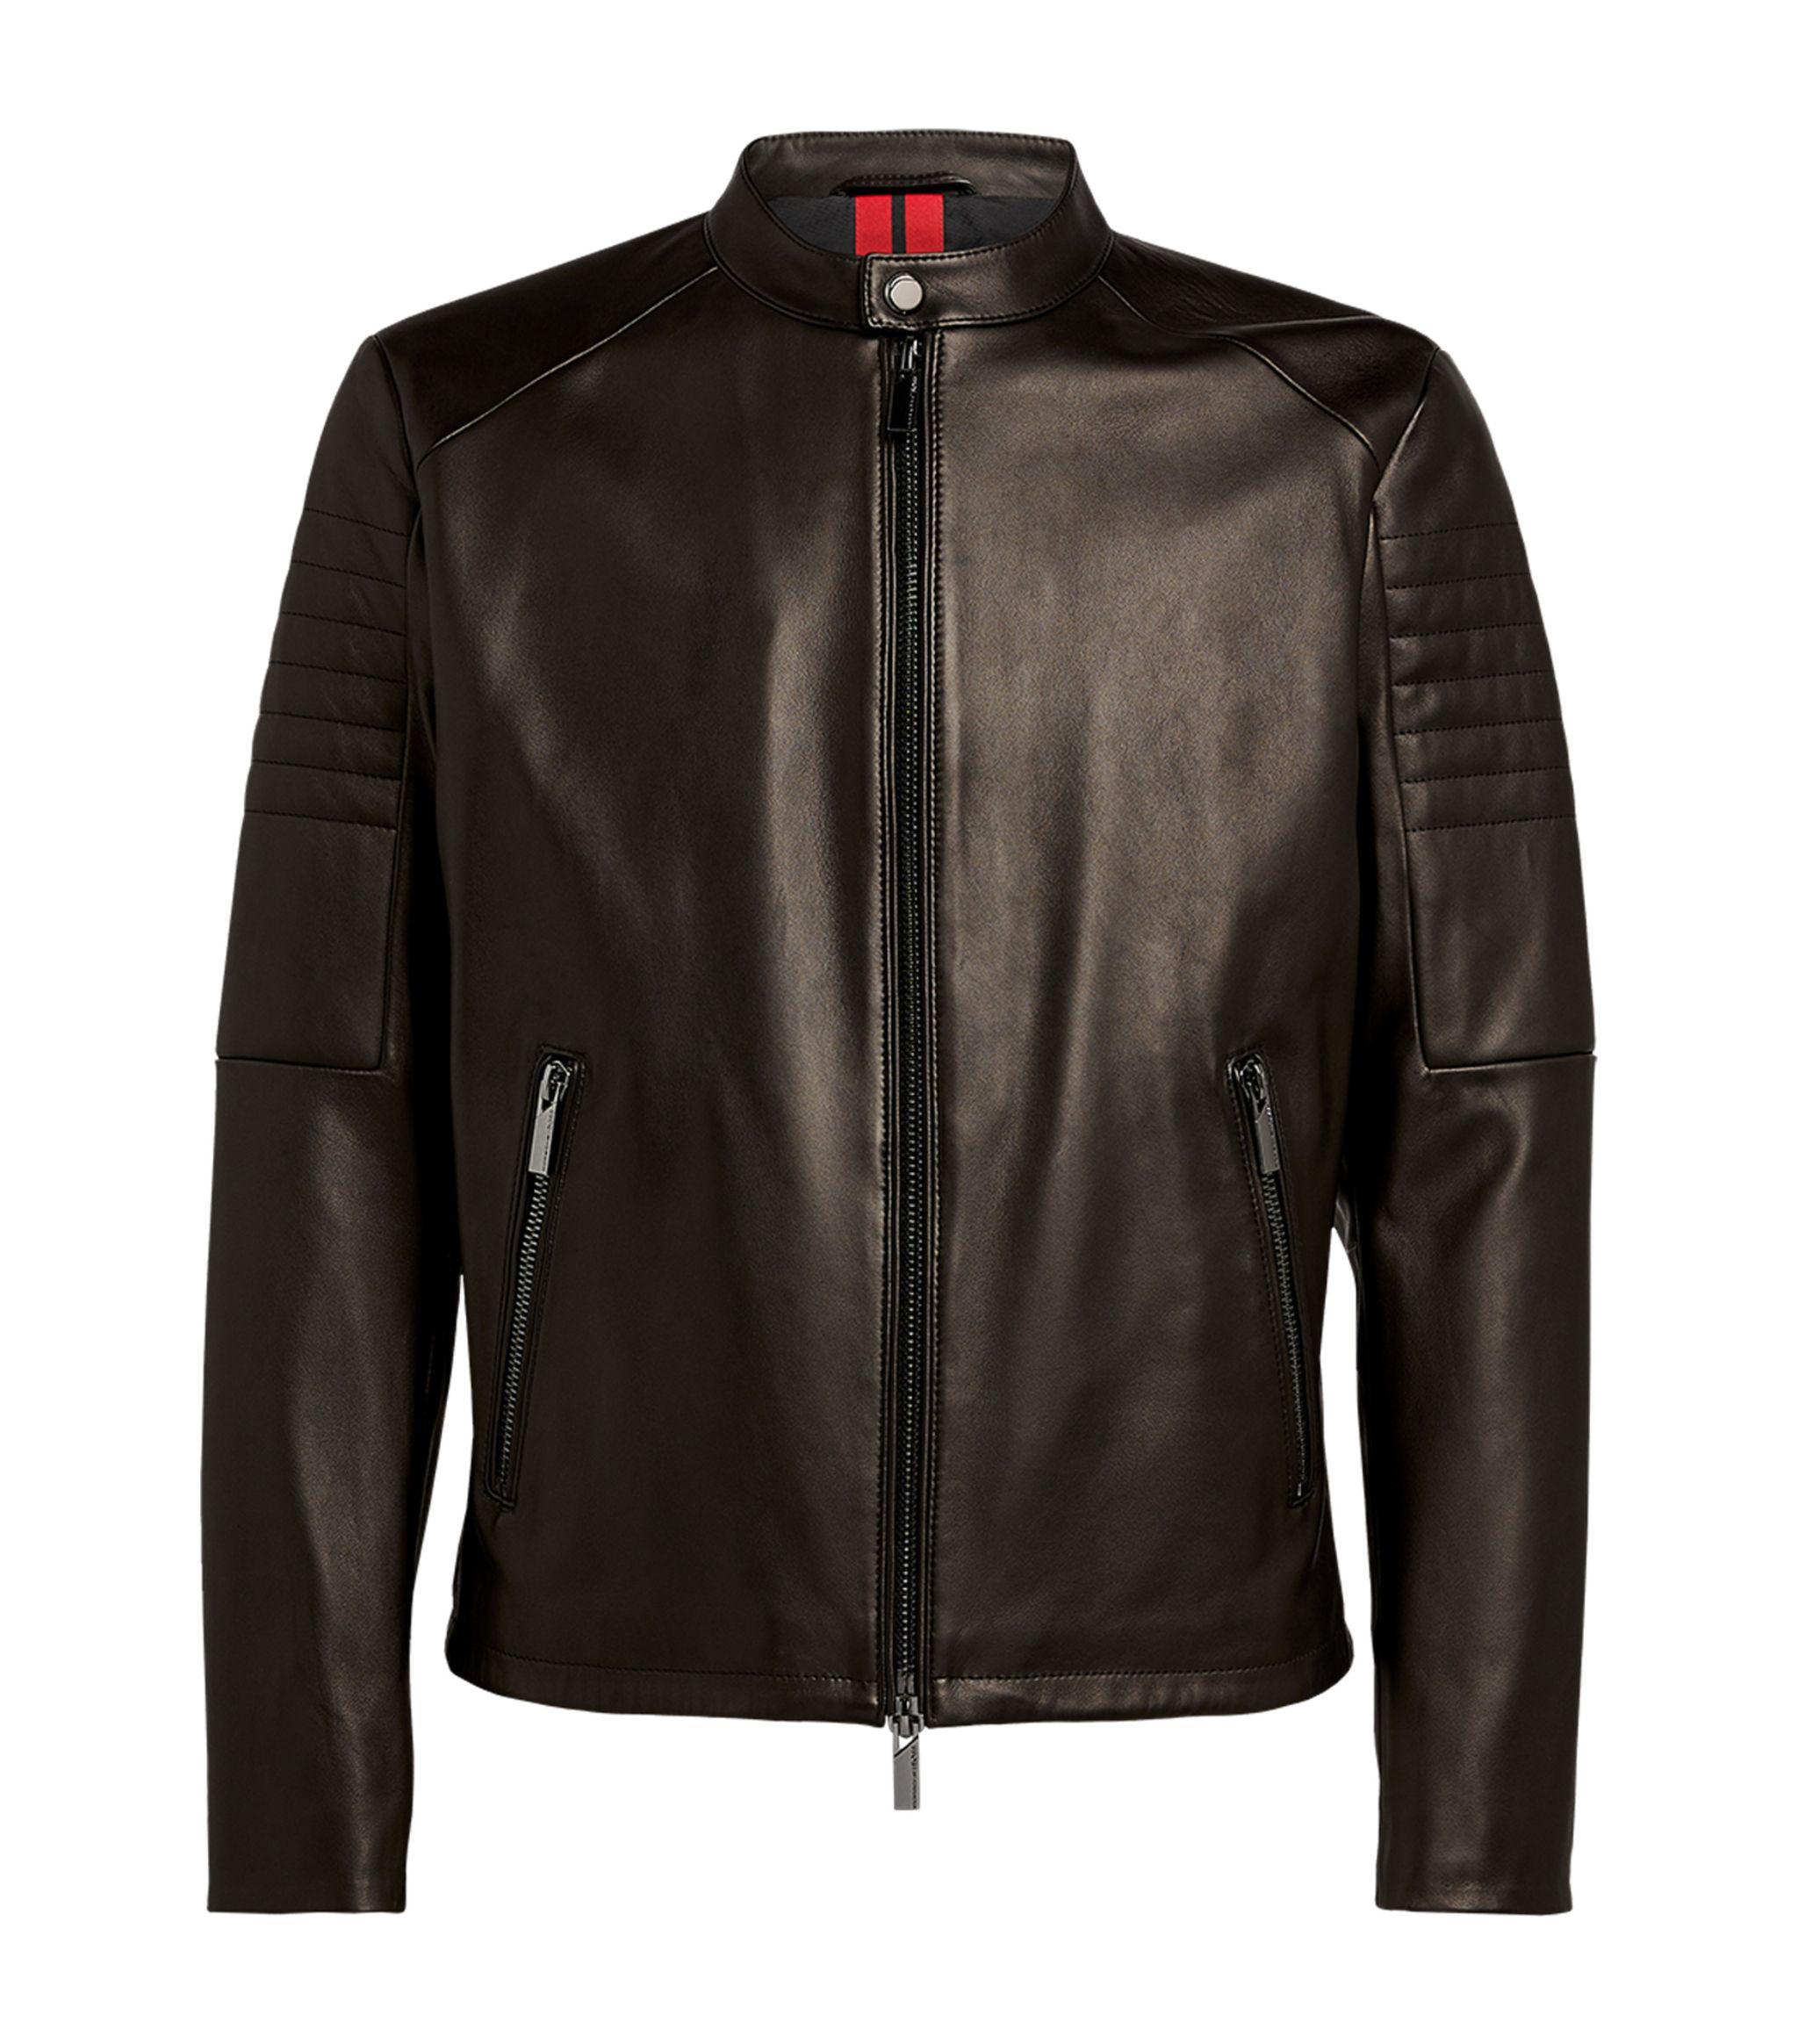 BOSS by HUGO BOSS + Porsche Leather Biker Jacket in Black for Men | Lyst